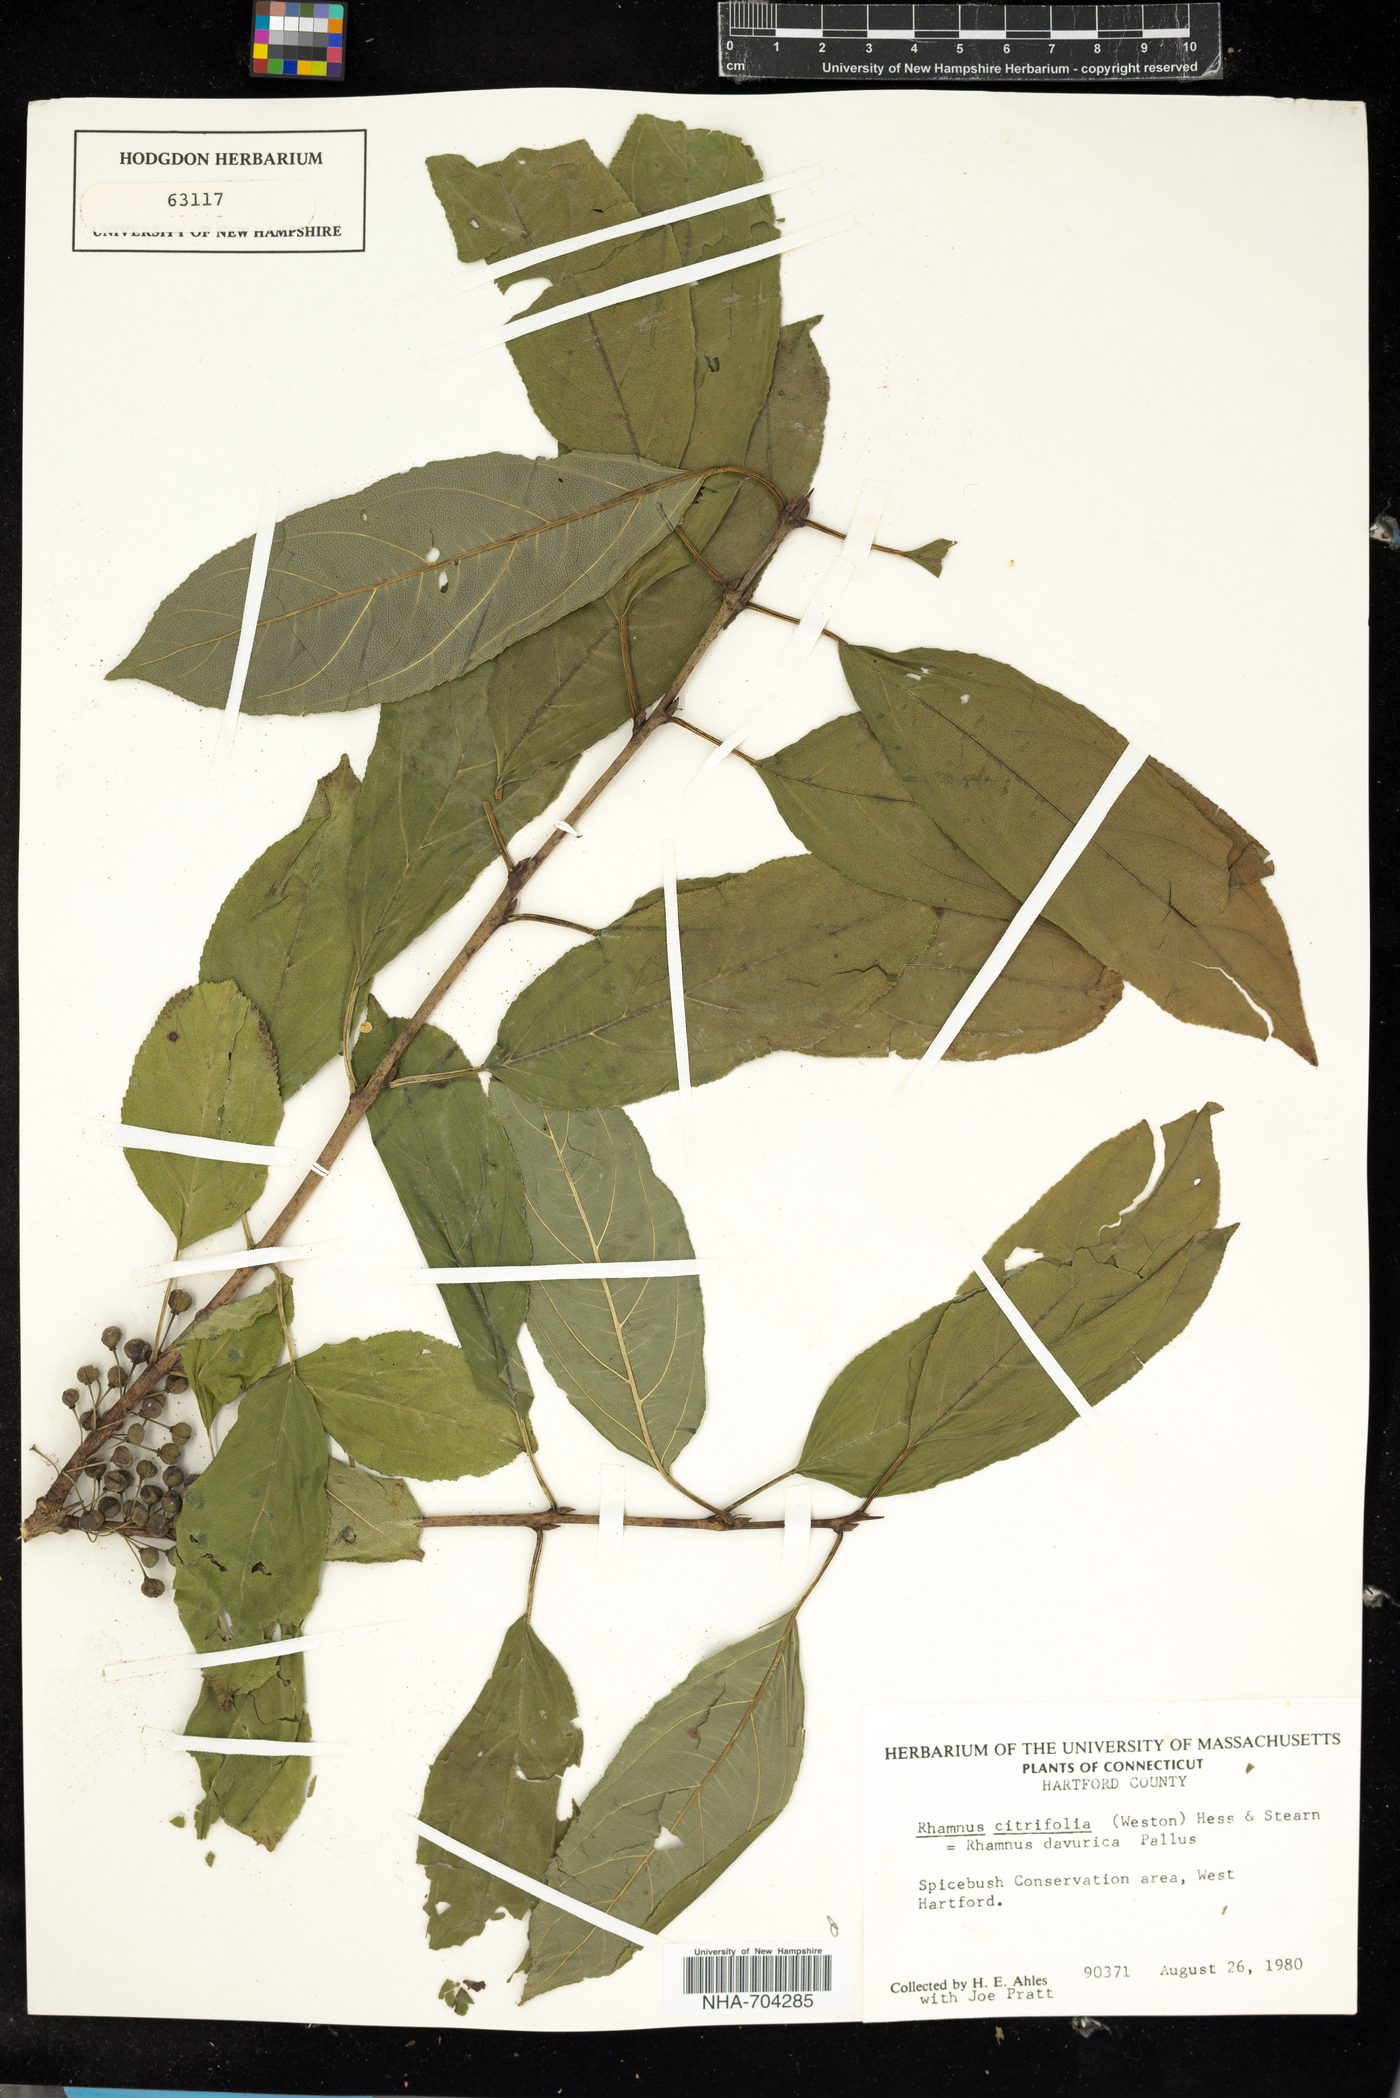 Rhamnus davurica ssp. davurica image